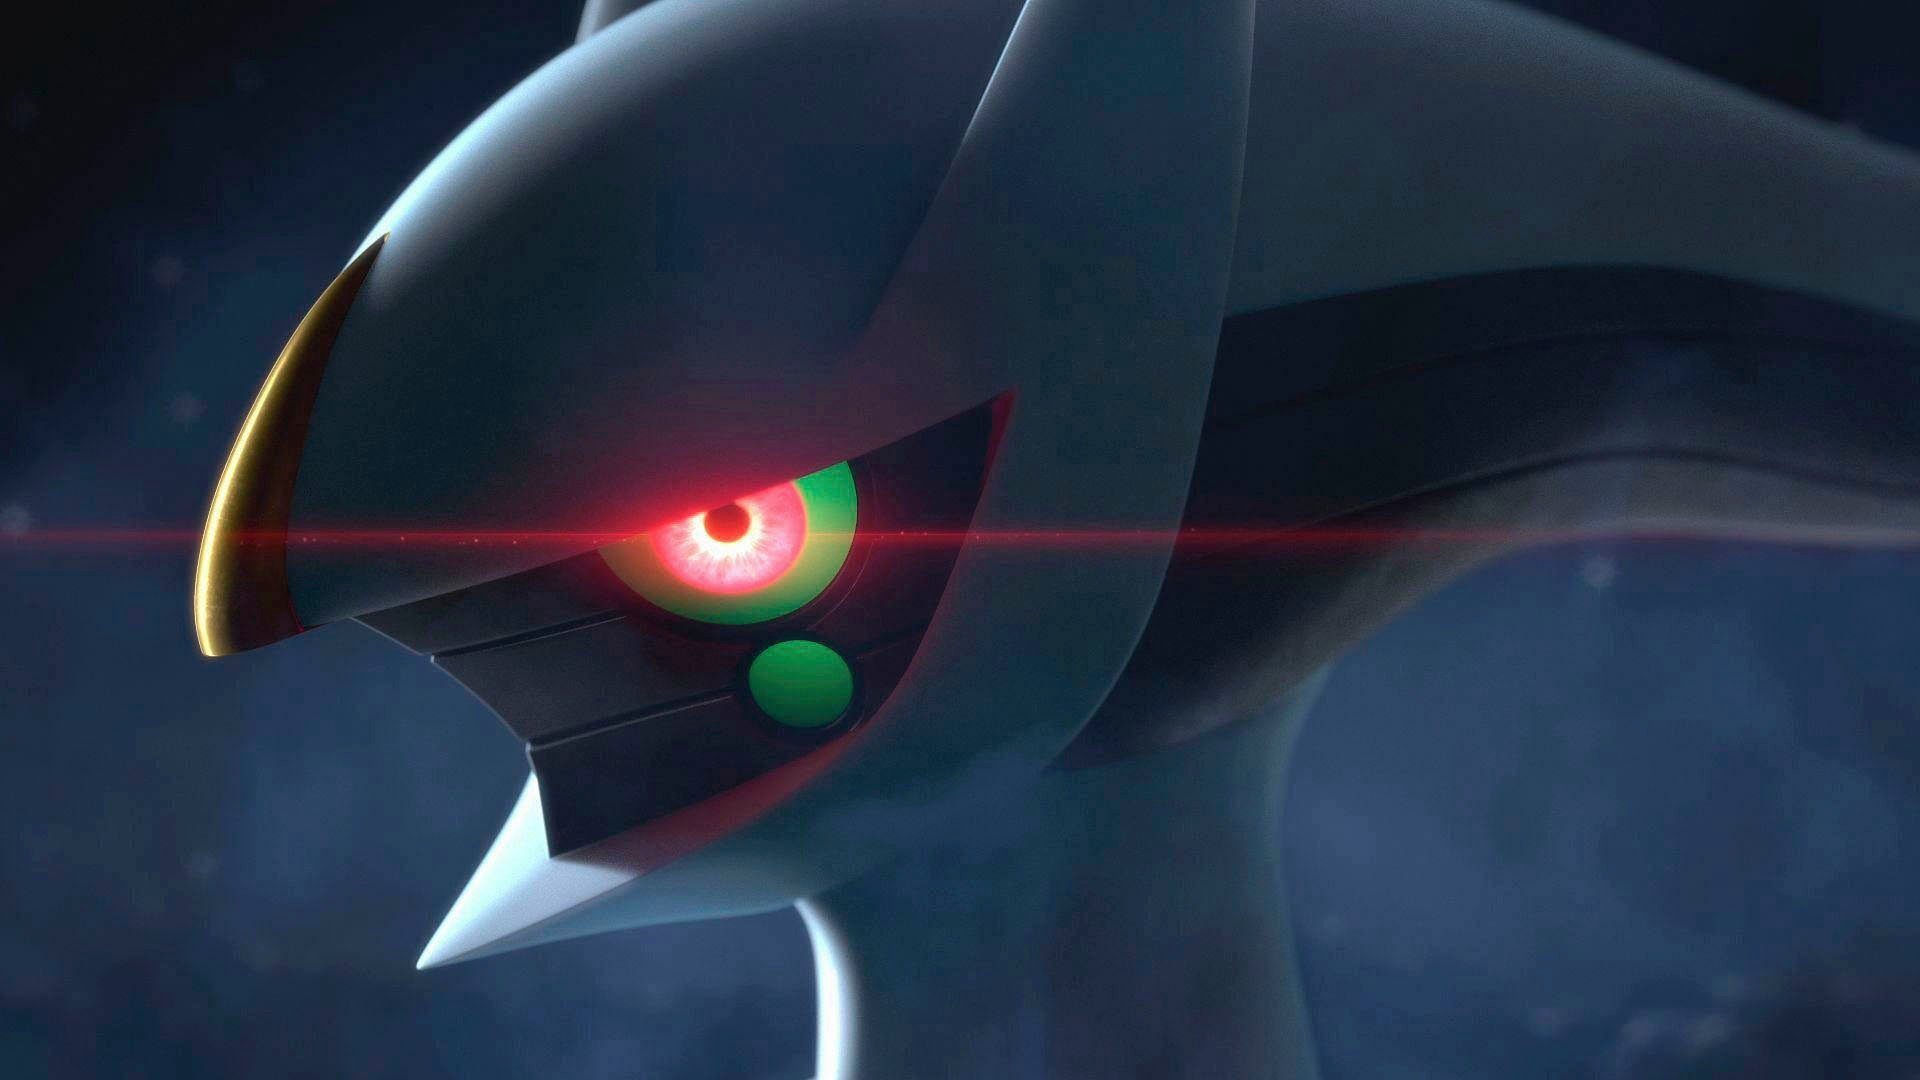 Arceus OLED-Modell, Nintendo Pokémon Legenden inkl. Switch,